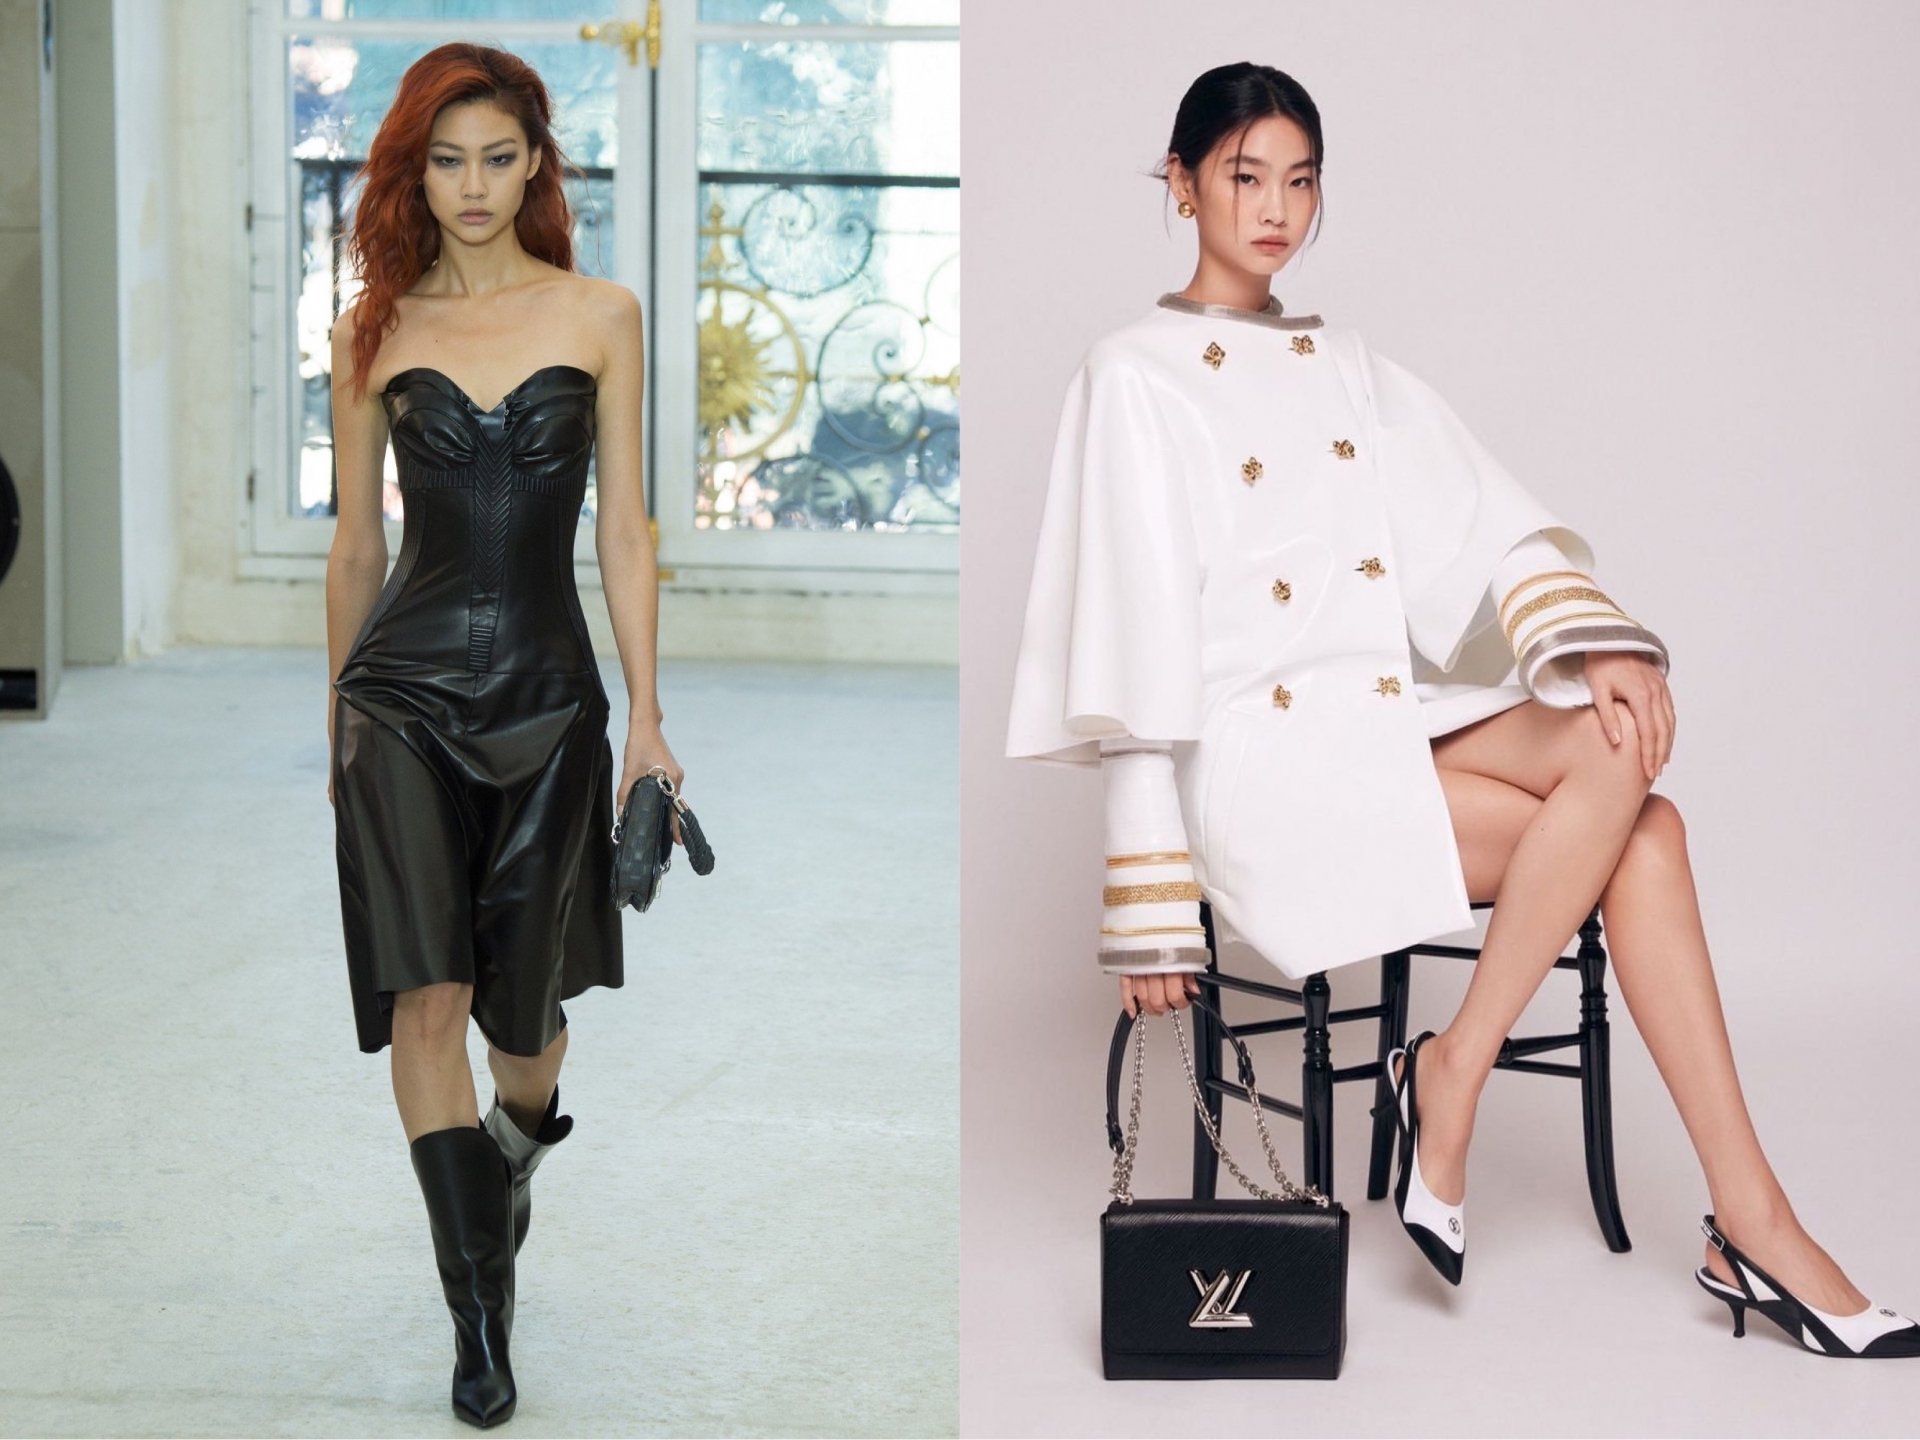 Từ vai trò người mẫu độc quyền, người đẹp đã được 'nâng cấp' lên thành Đại sứ toàn cầu của thương hiệu Louis Vuitton.